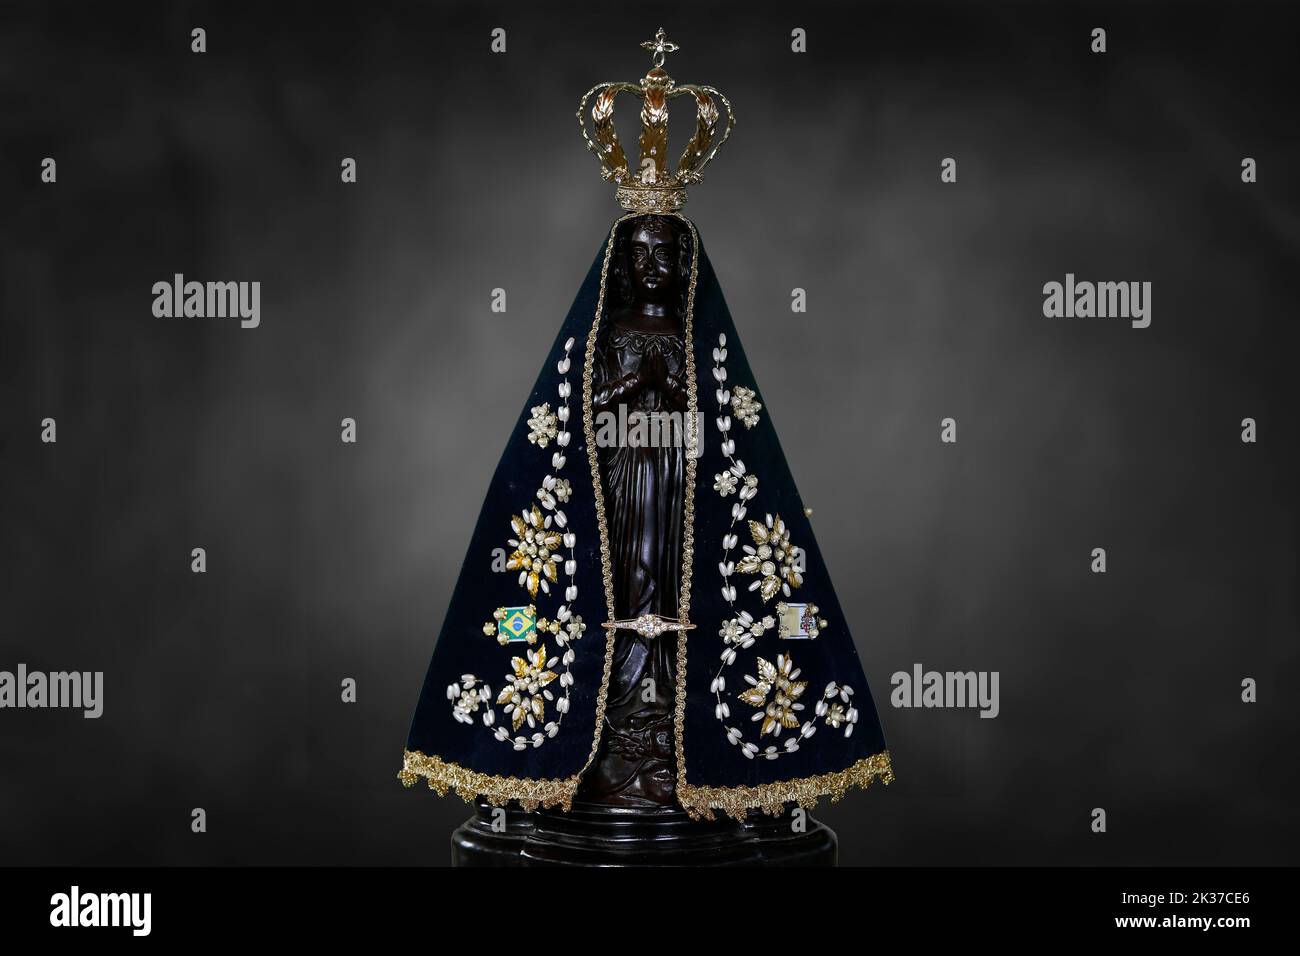 Our Lady of Aparecida Statue of the image - Nossa Senhora Aparecida Stock Photo